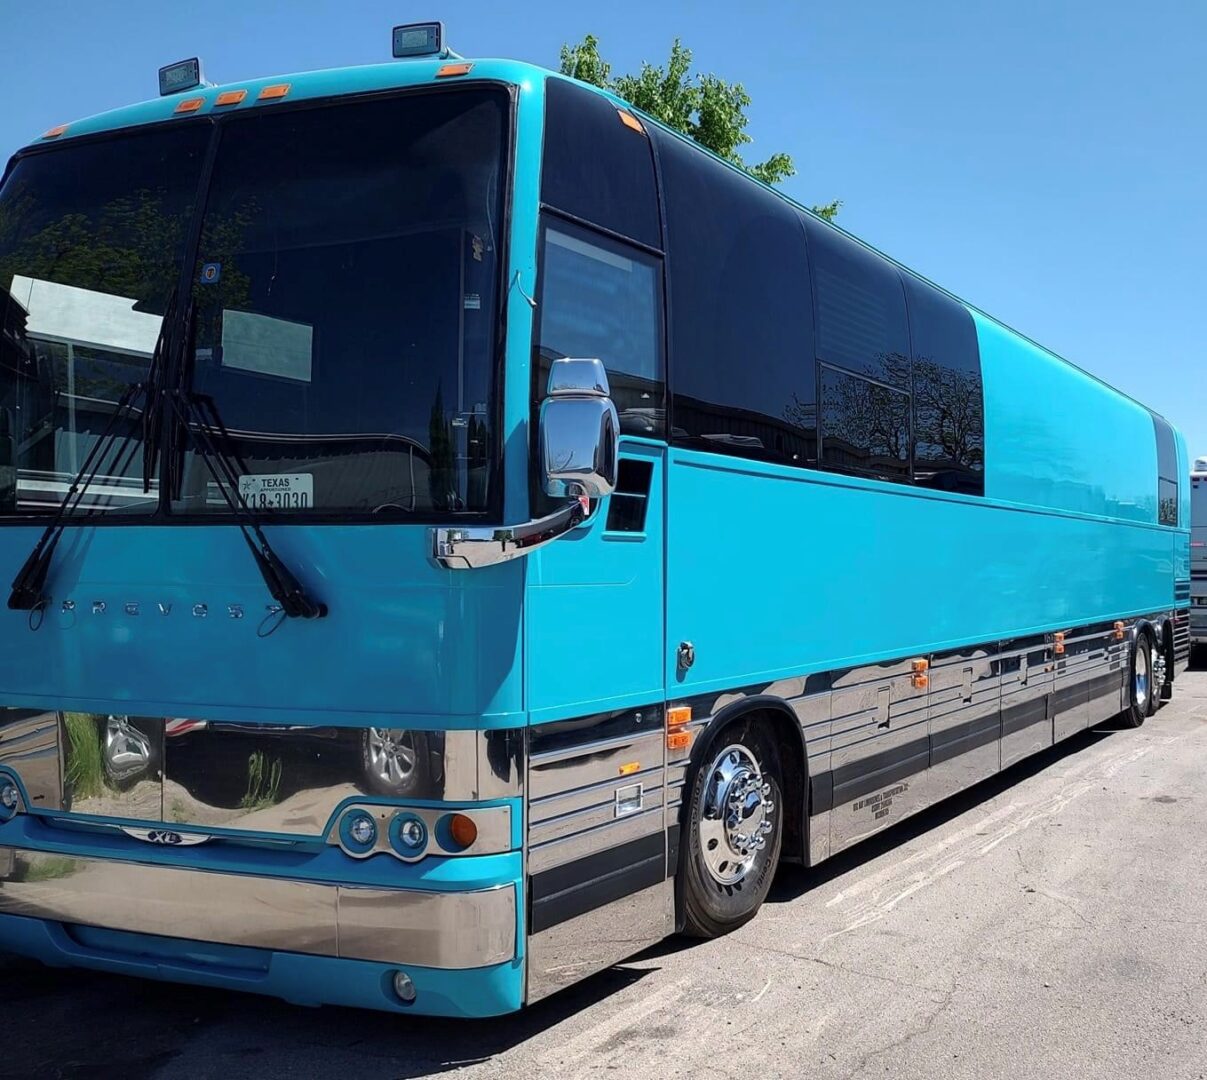 Blue tour bus parked on pavement.